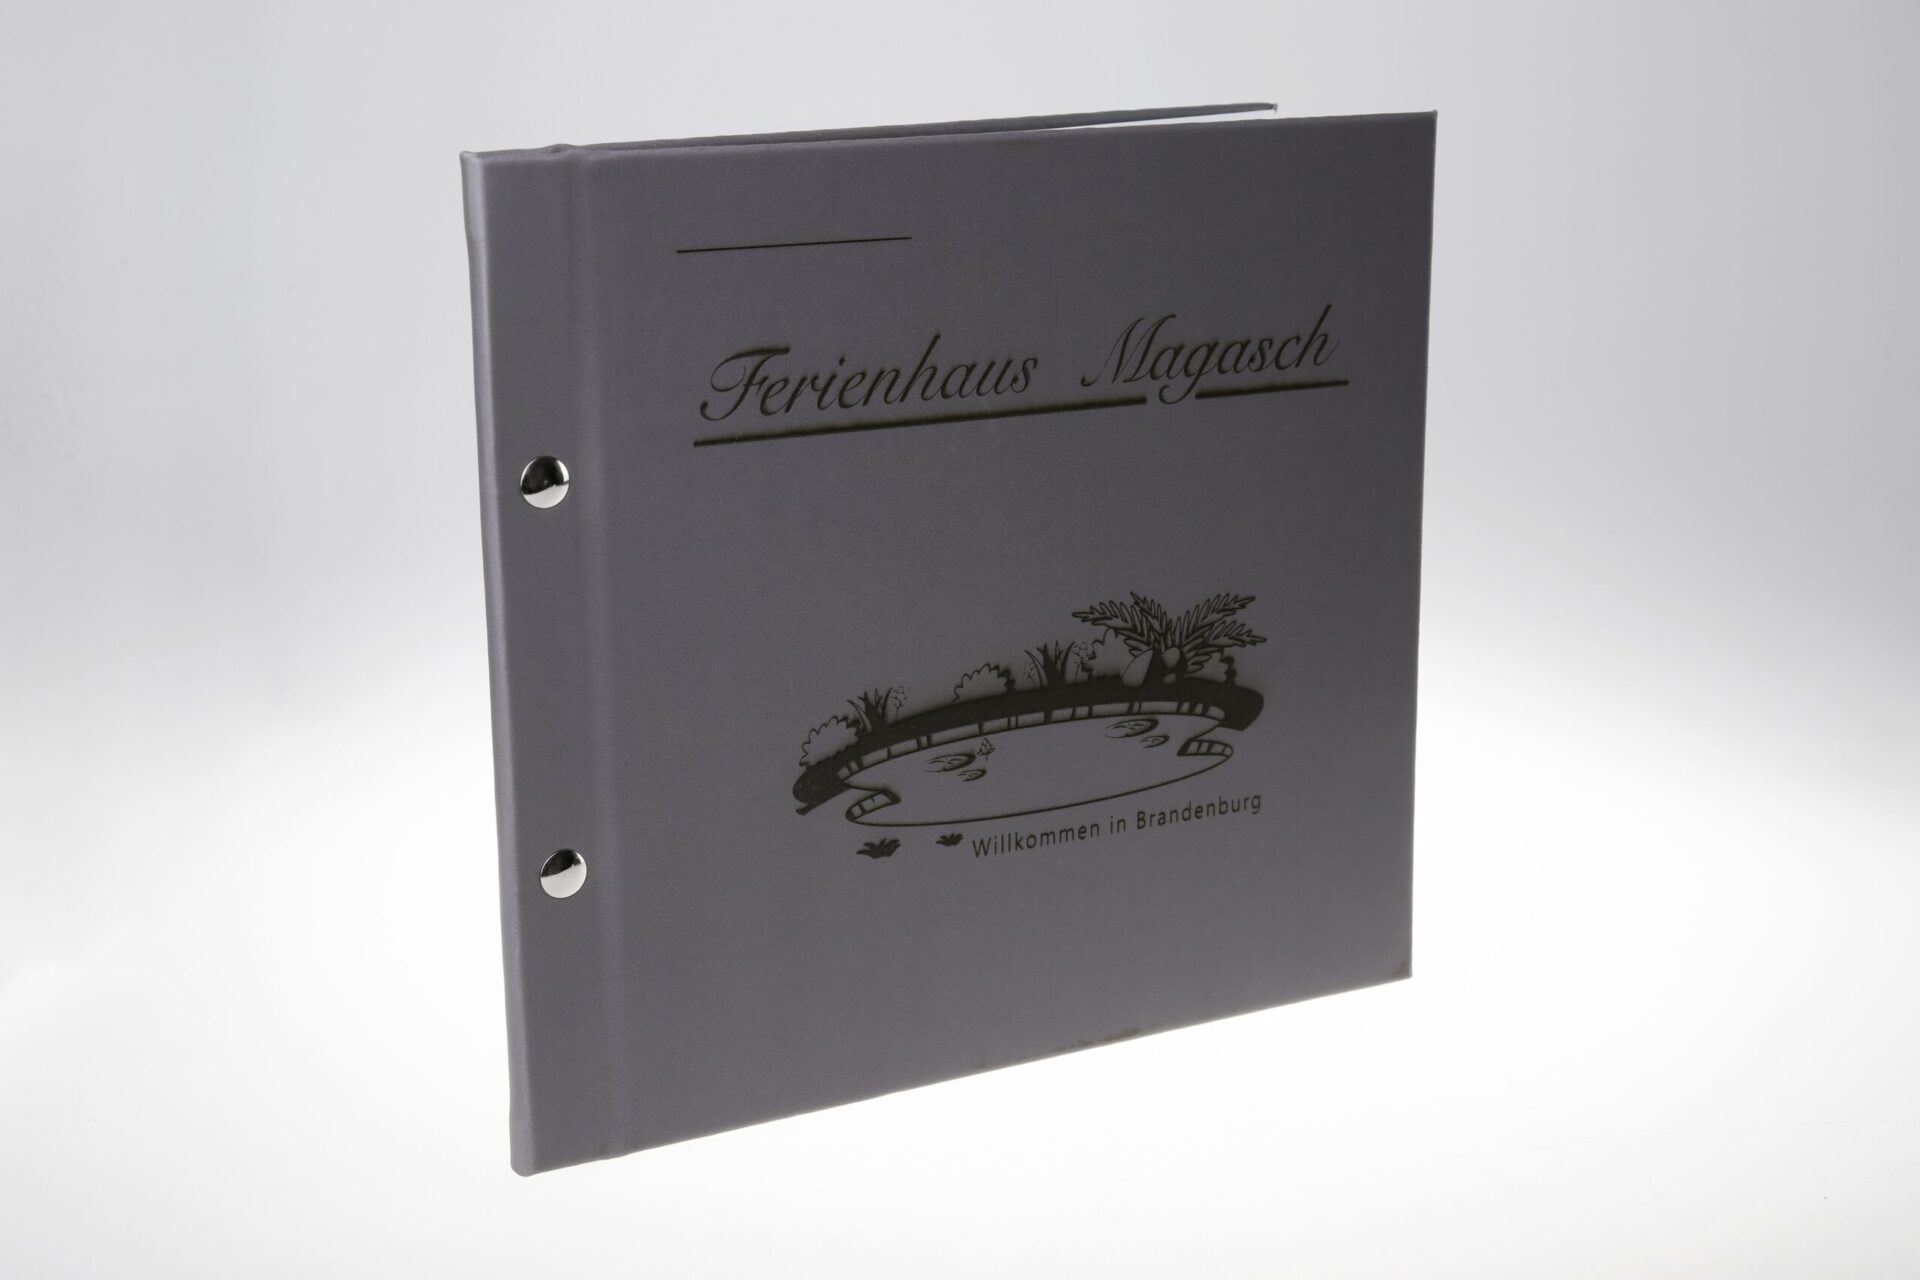 Buchdruck für Ferienhaus Magasch mit Leder-Hardcover